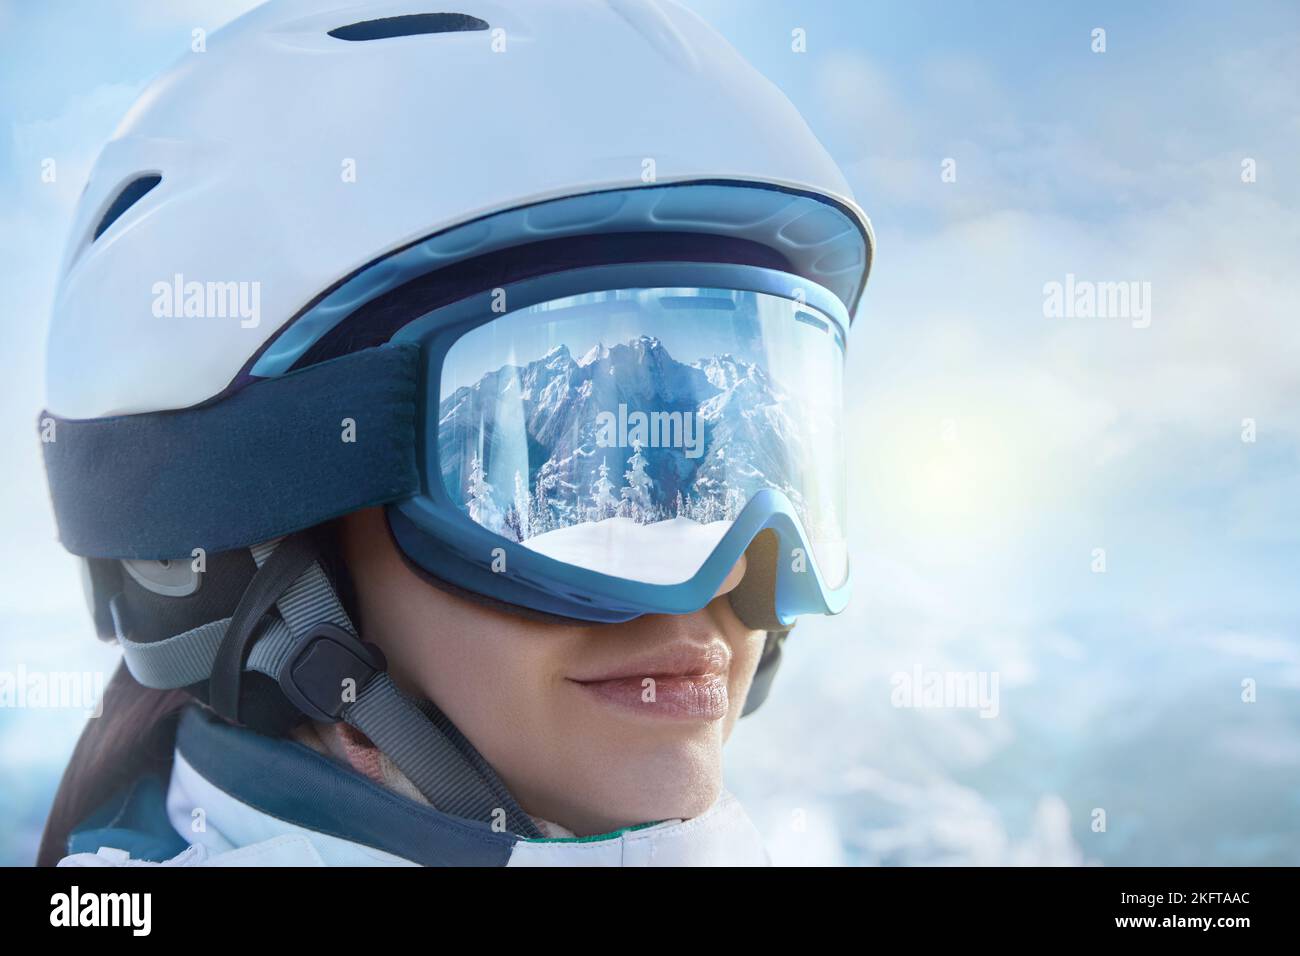 Acercamiento De Las Gafas De Esquí De Una Mujer Con El Reflejo De Las  Montañas Nevadas. Mujer En El Fondo Cielo Azul. Imagen de archivo - Imagen  de espacio, hembra: 261285445